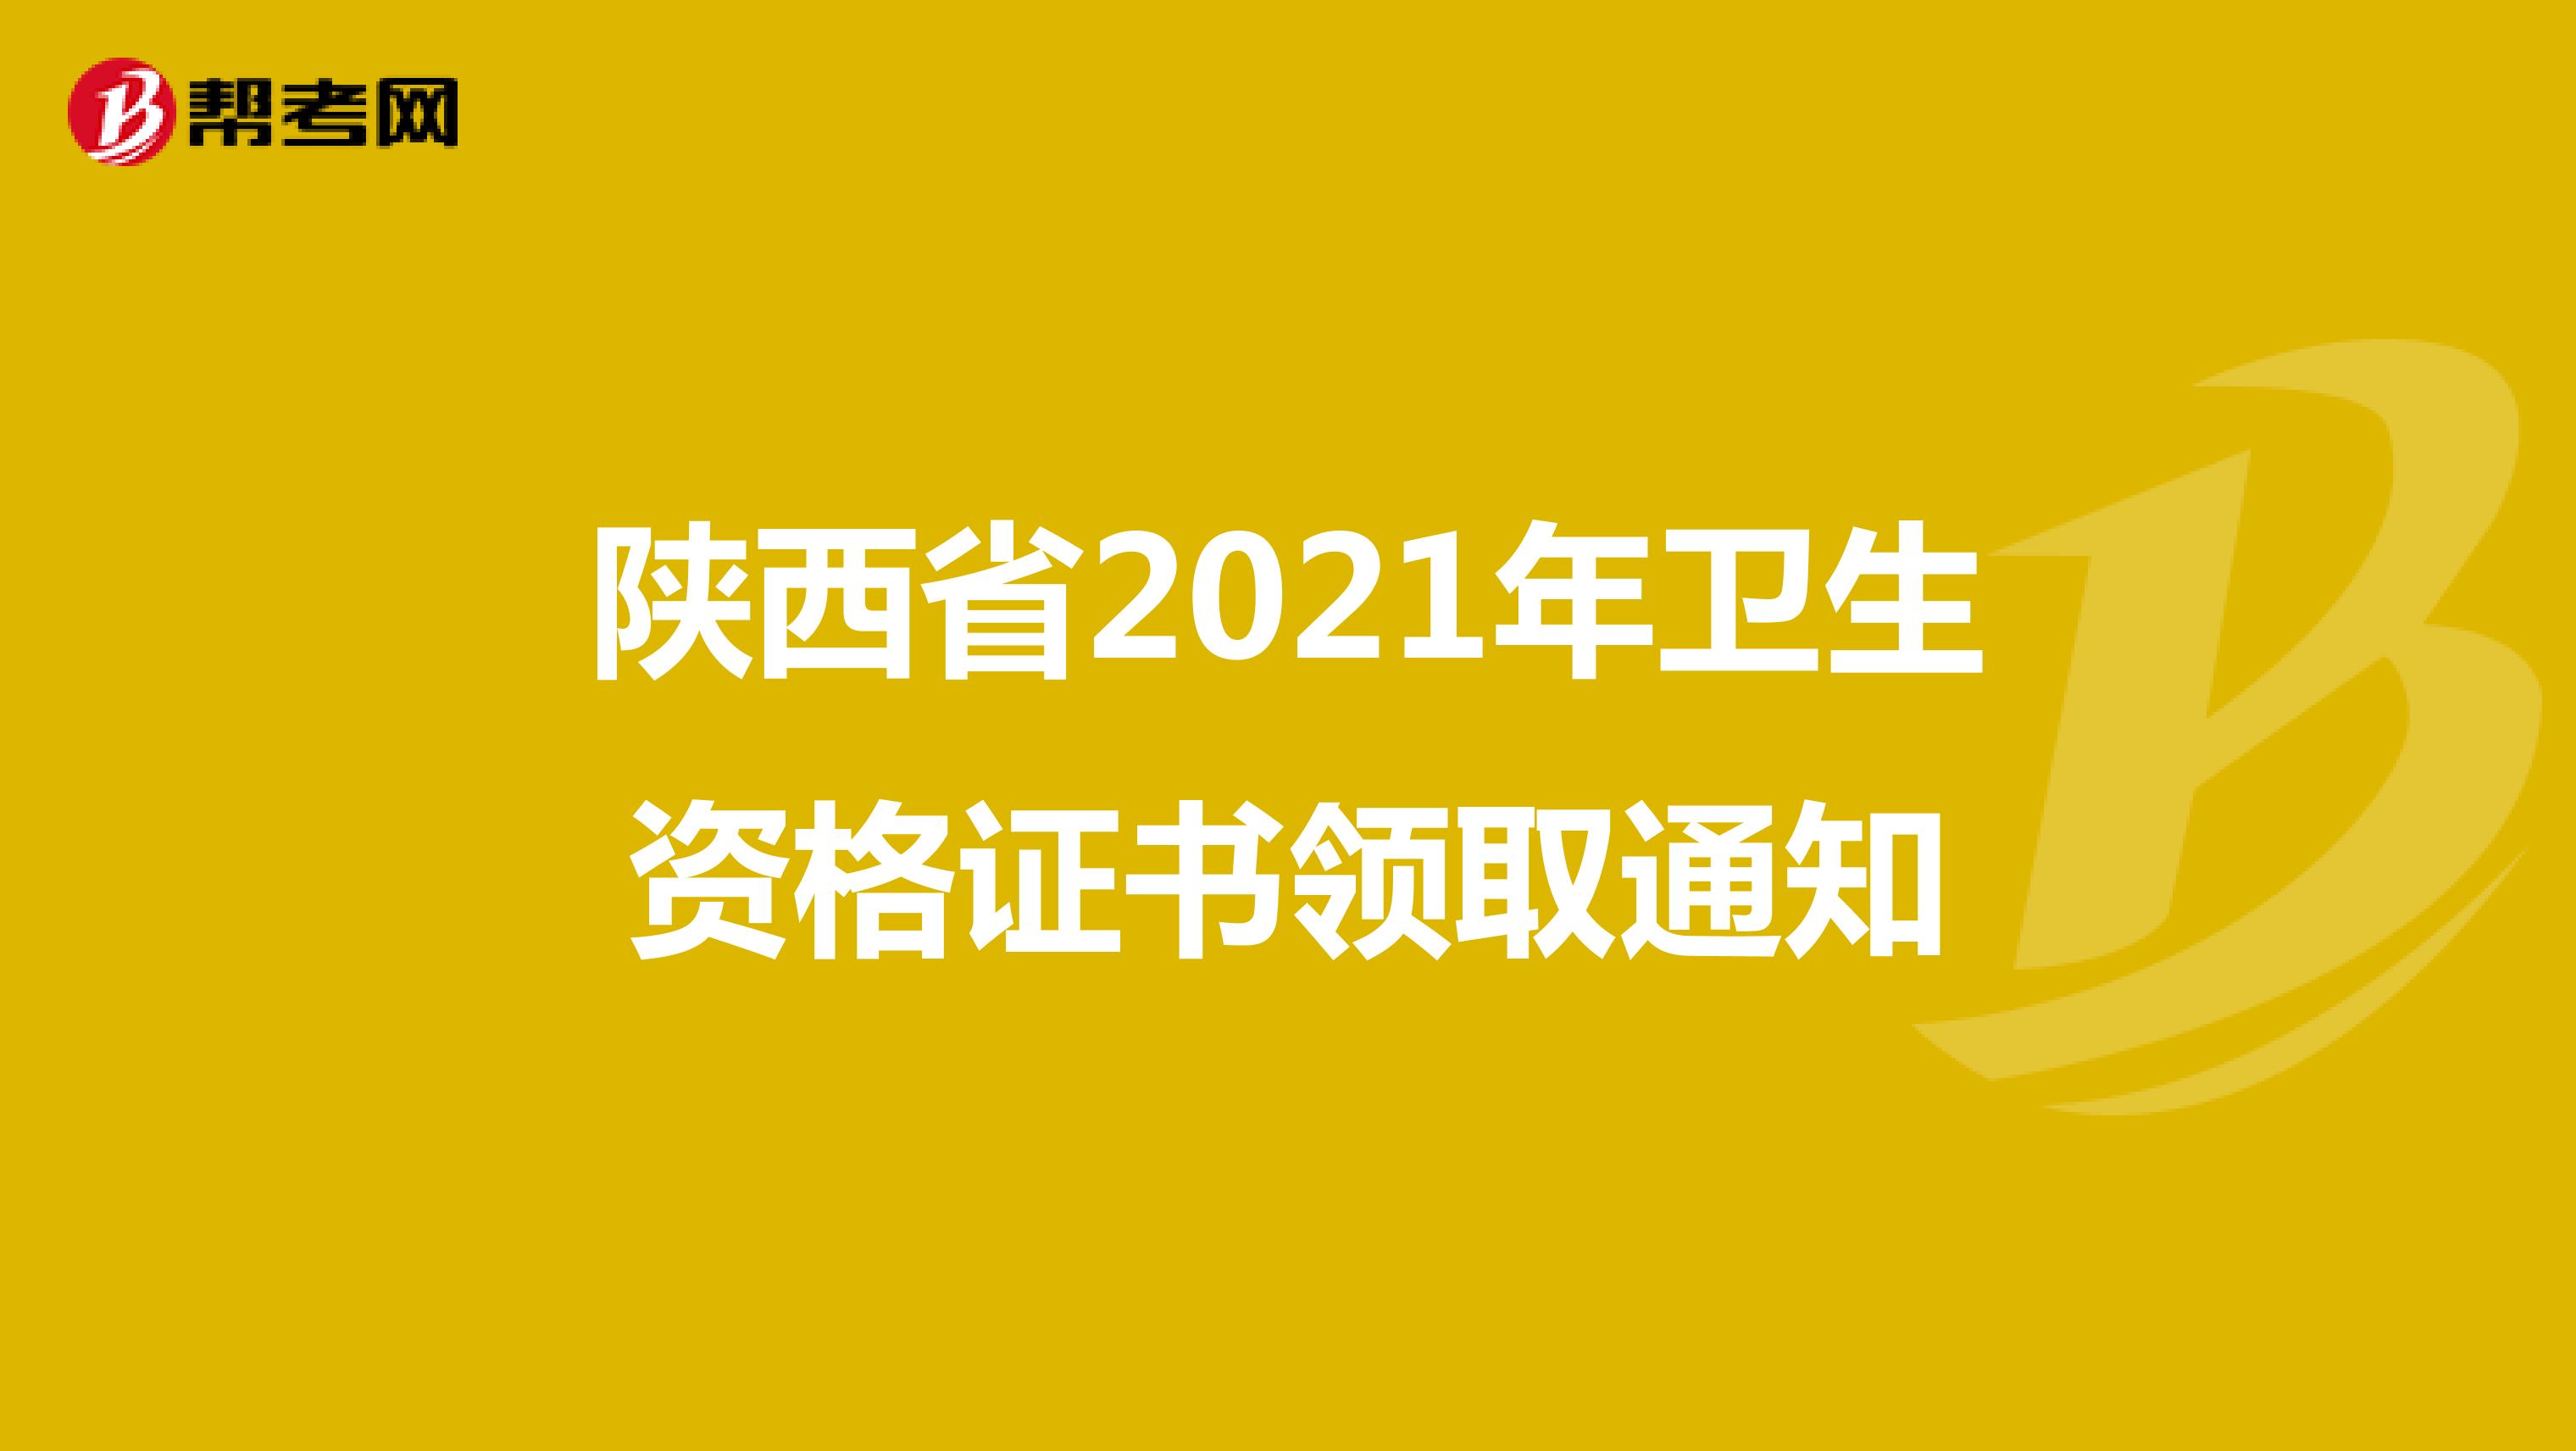 陕西省2021年卫生资格证书领取通知